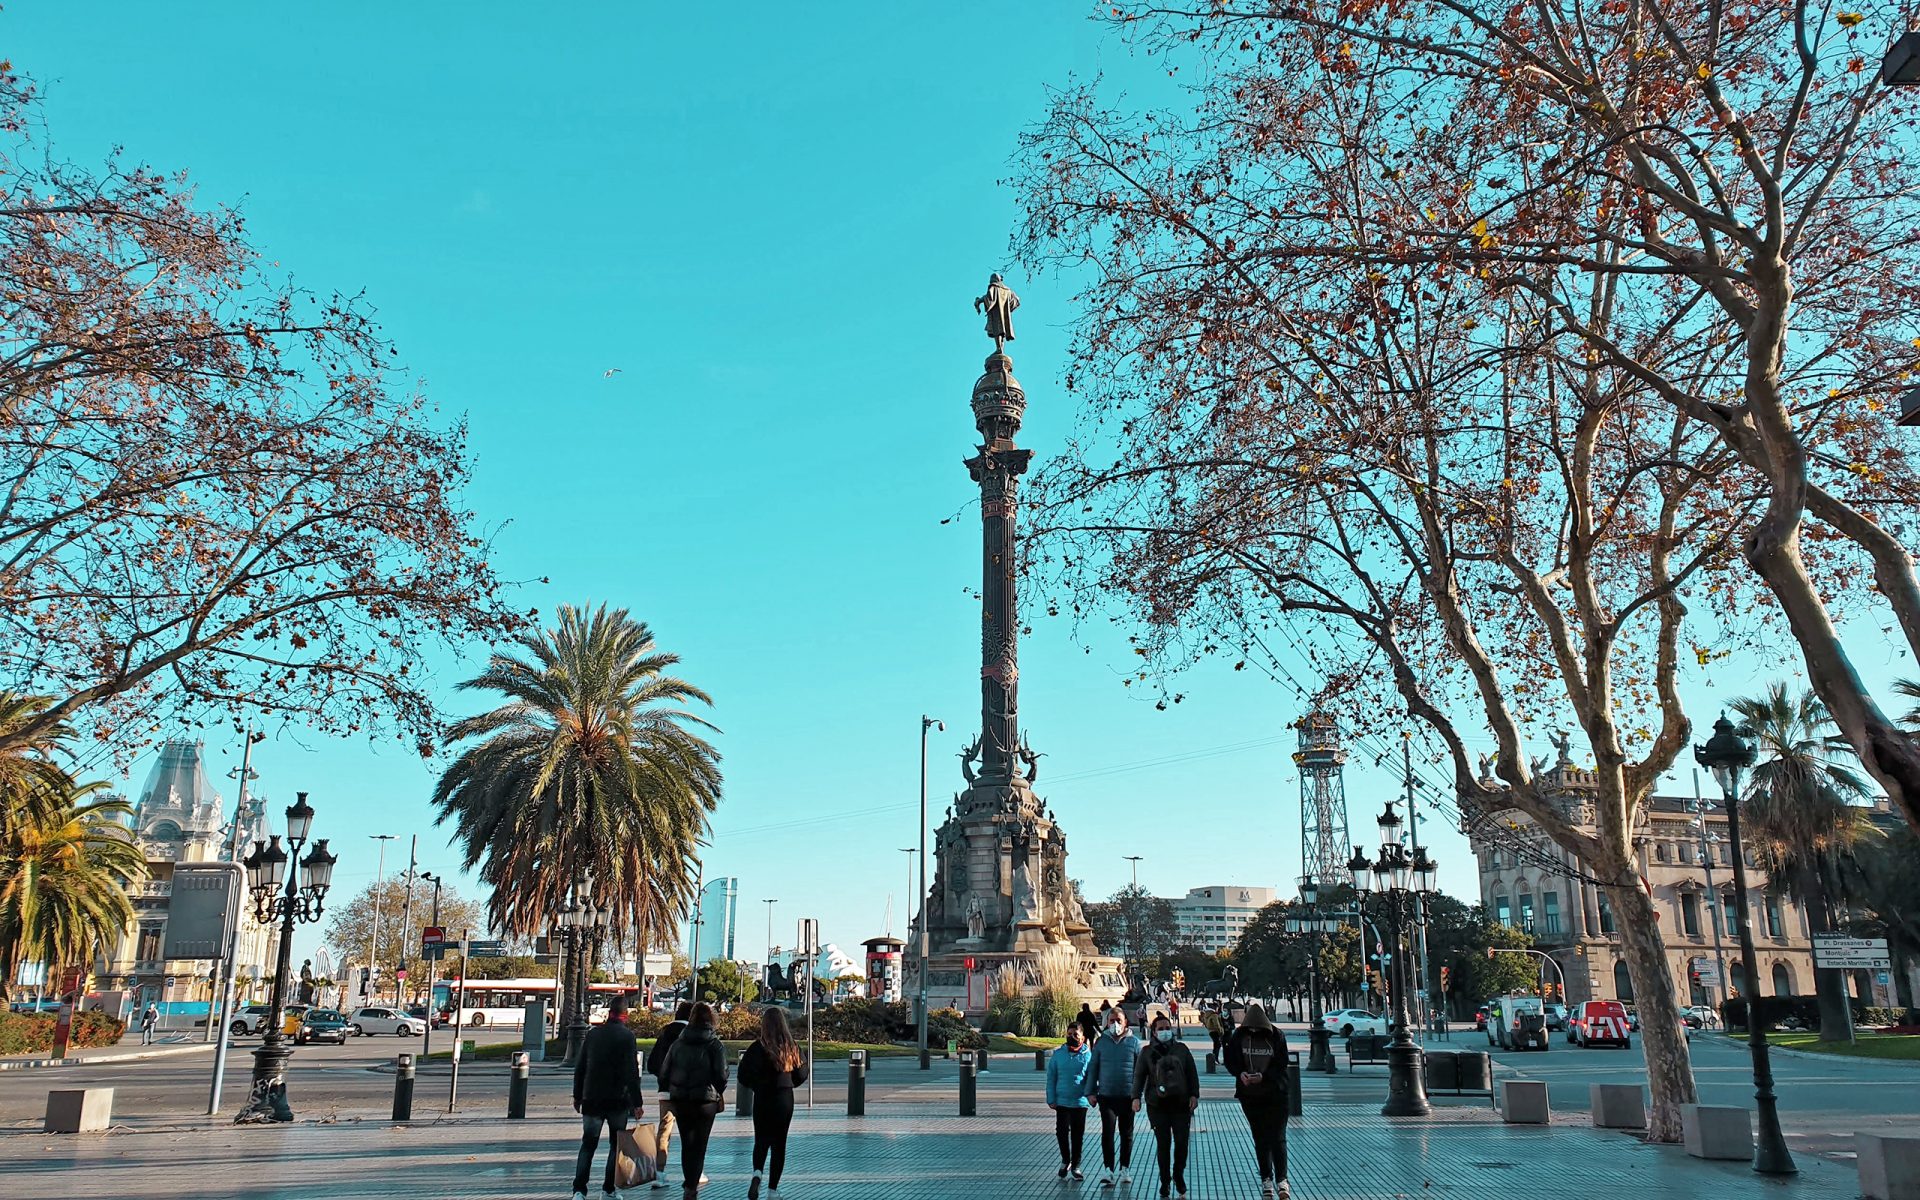 Monumento a cristobal colon en las ramblas de barcelona, el barrio gótico. visitas guiadas en español